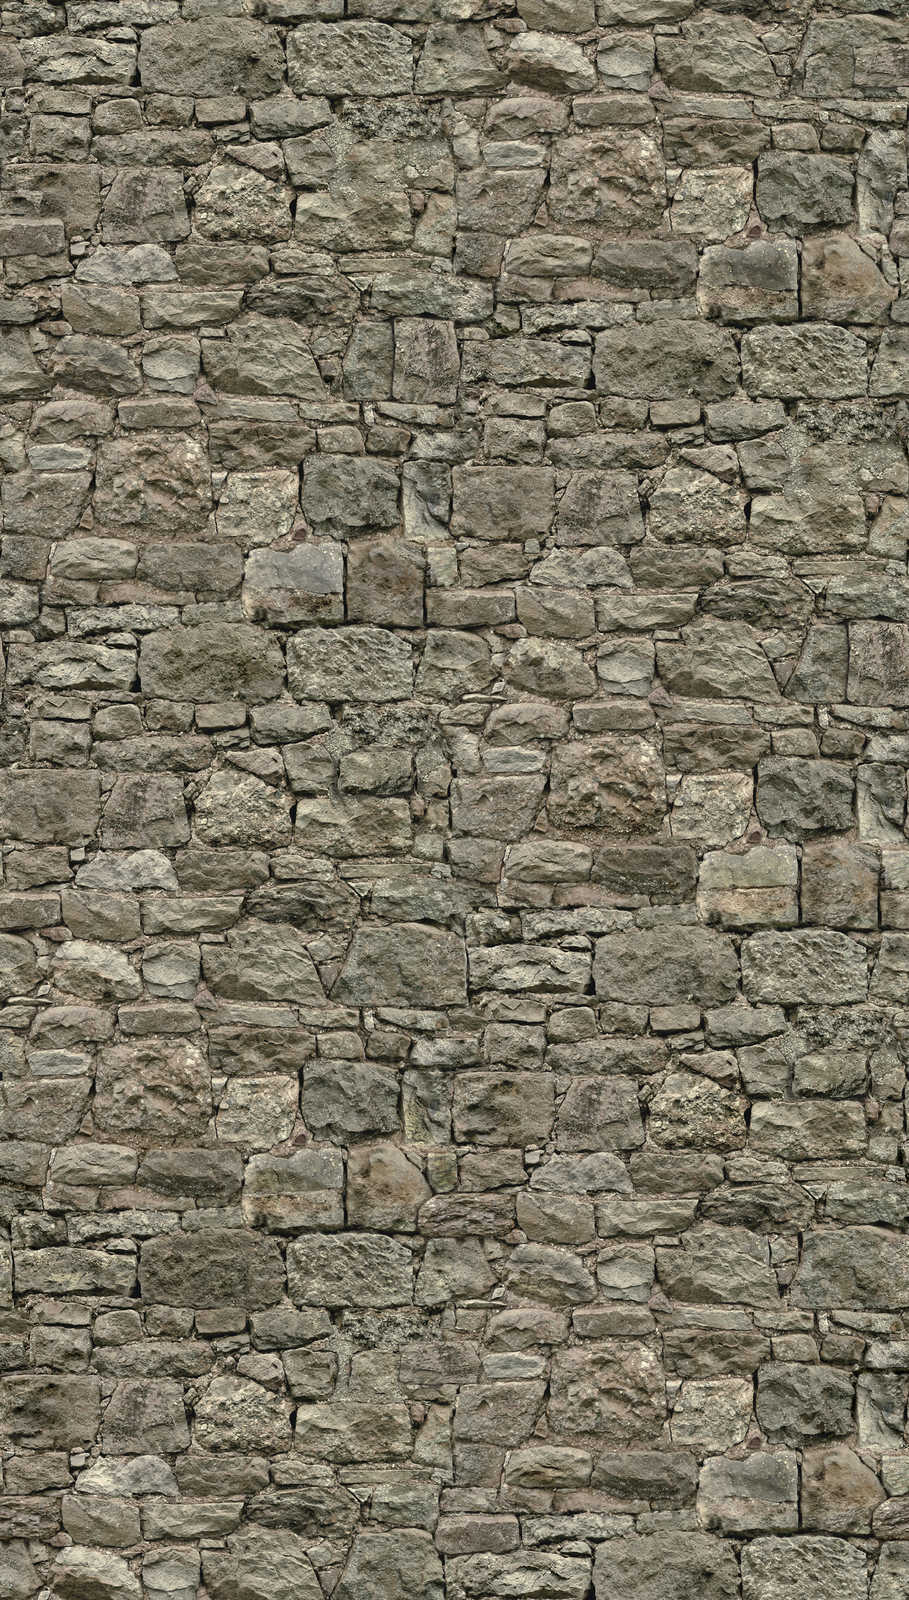             Papel pintado no tejido con aspecto de piedra en colores oscuros - gris, beige
        